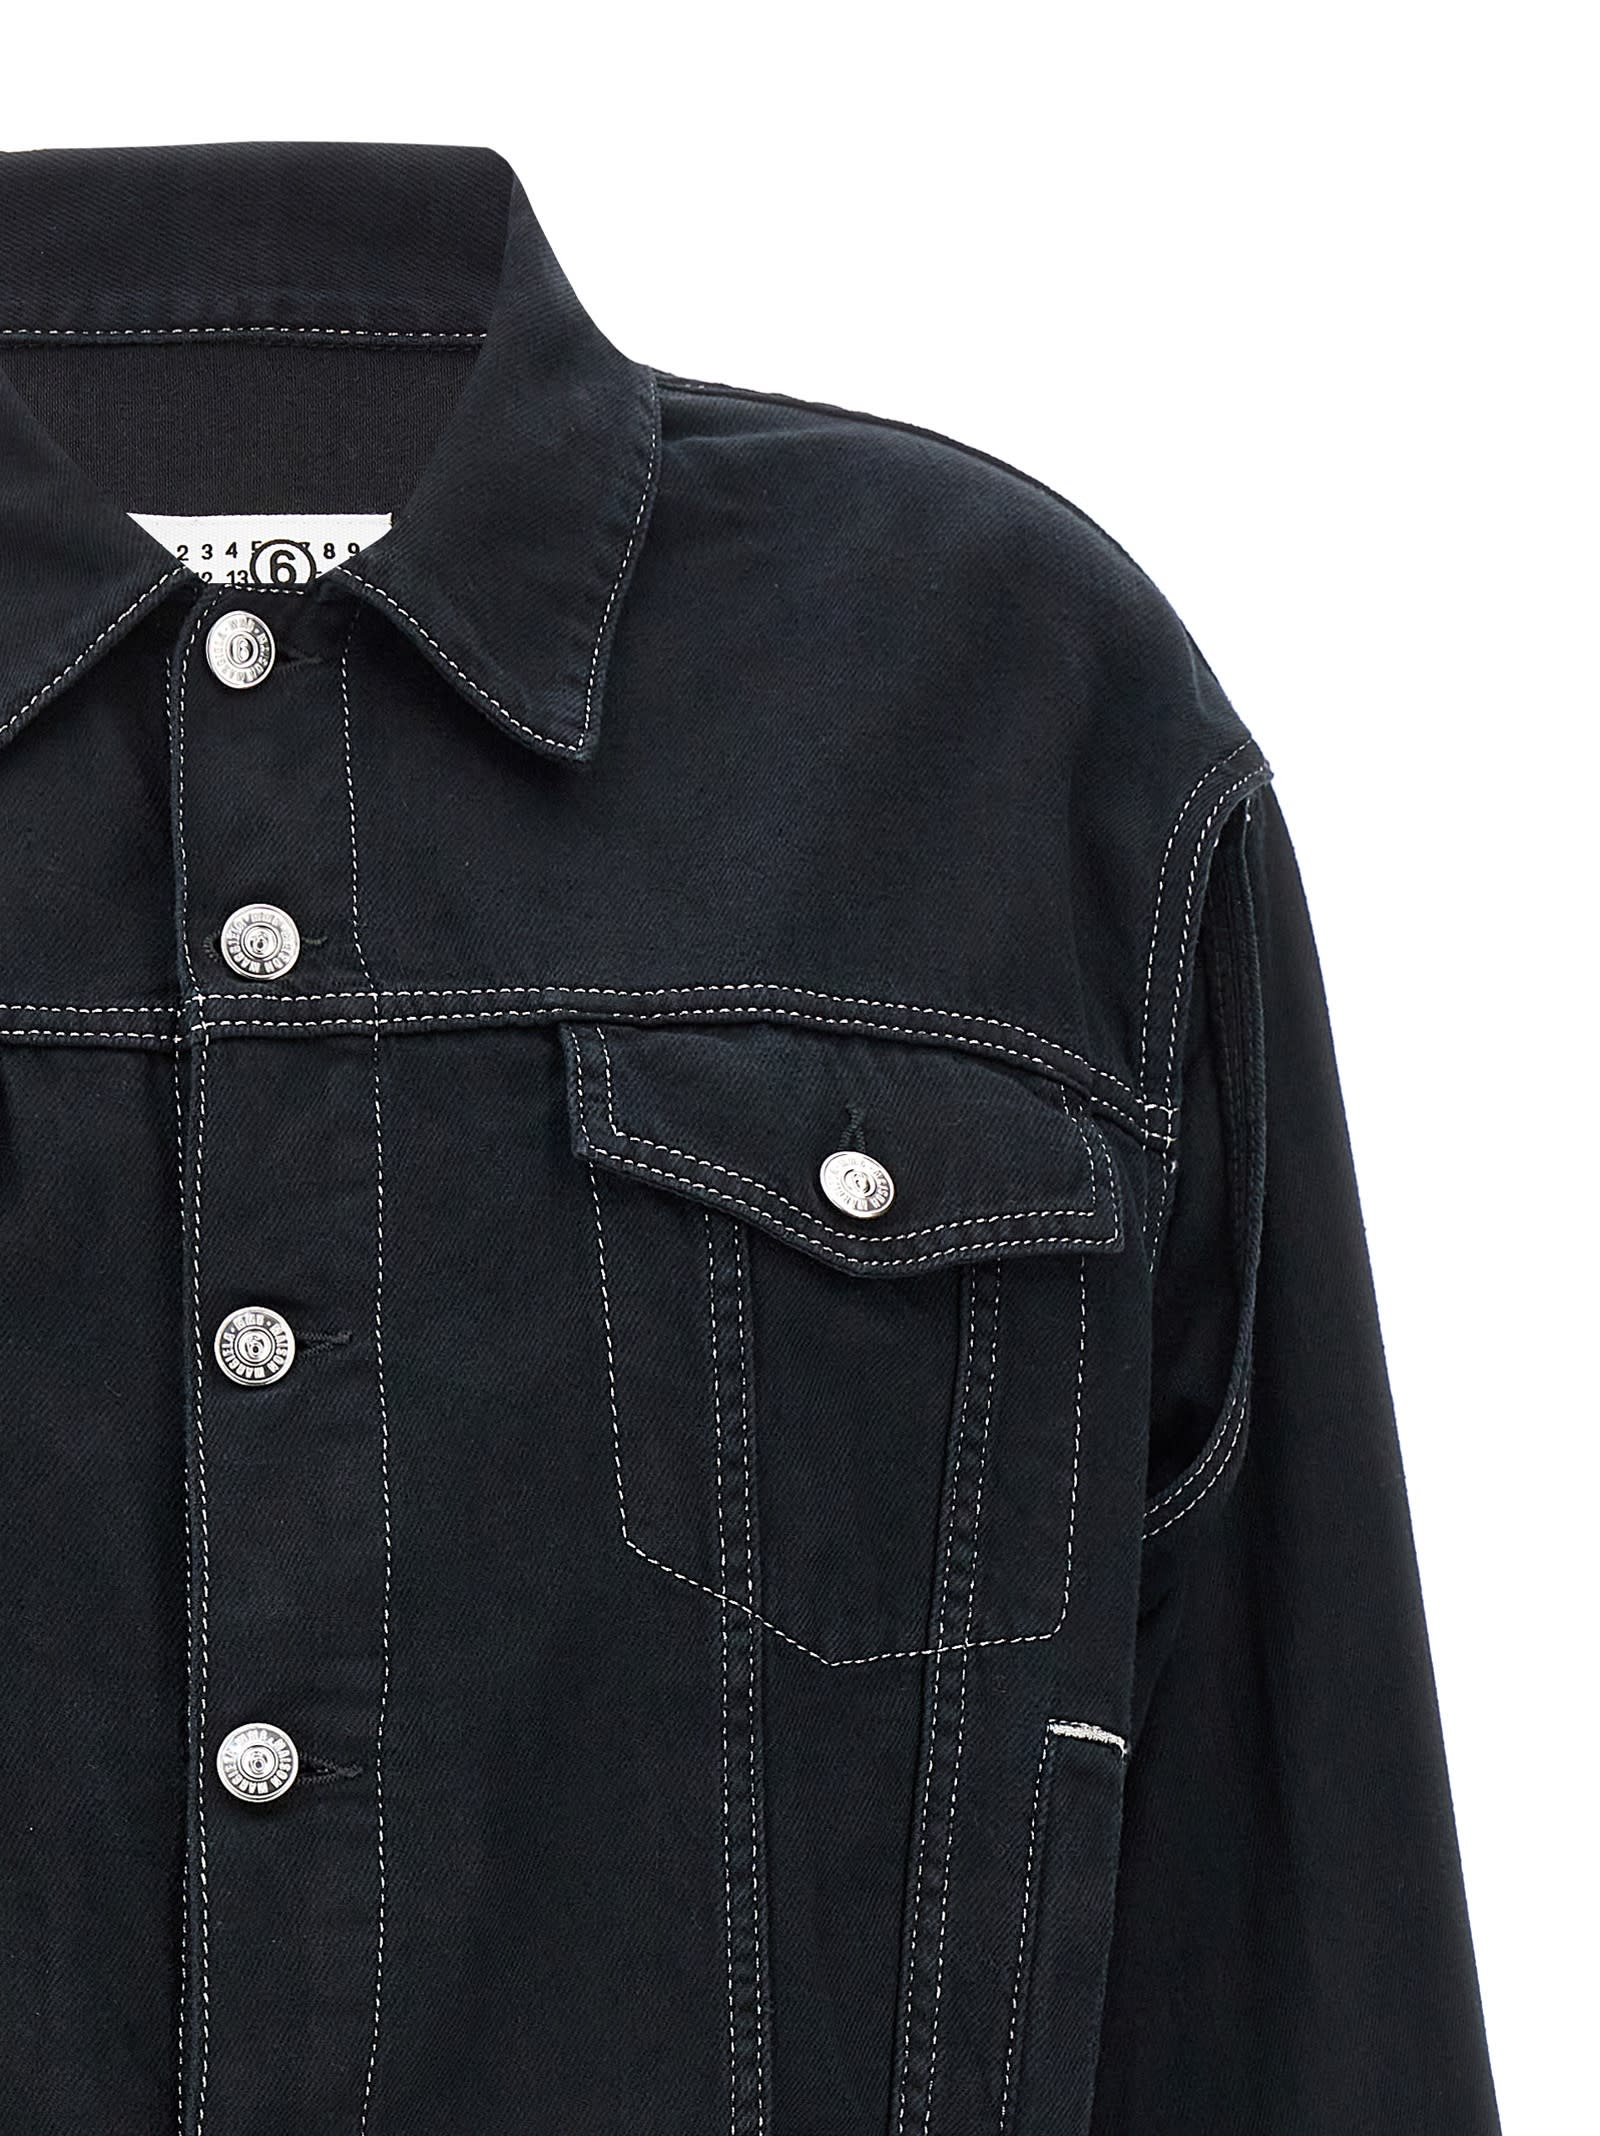 Shop Mm6 Maison Margiela Lurex Stitching Denim Jacket In Black